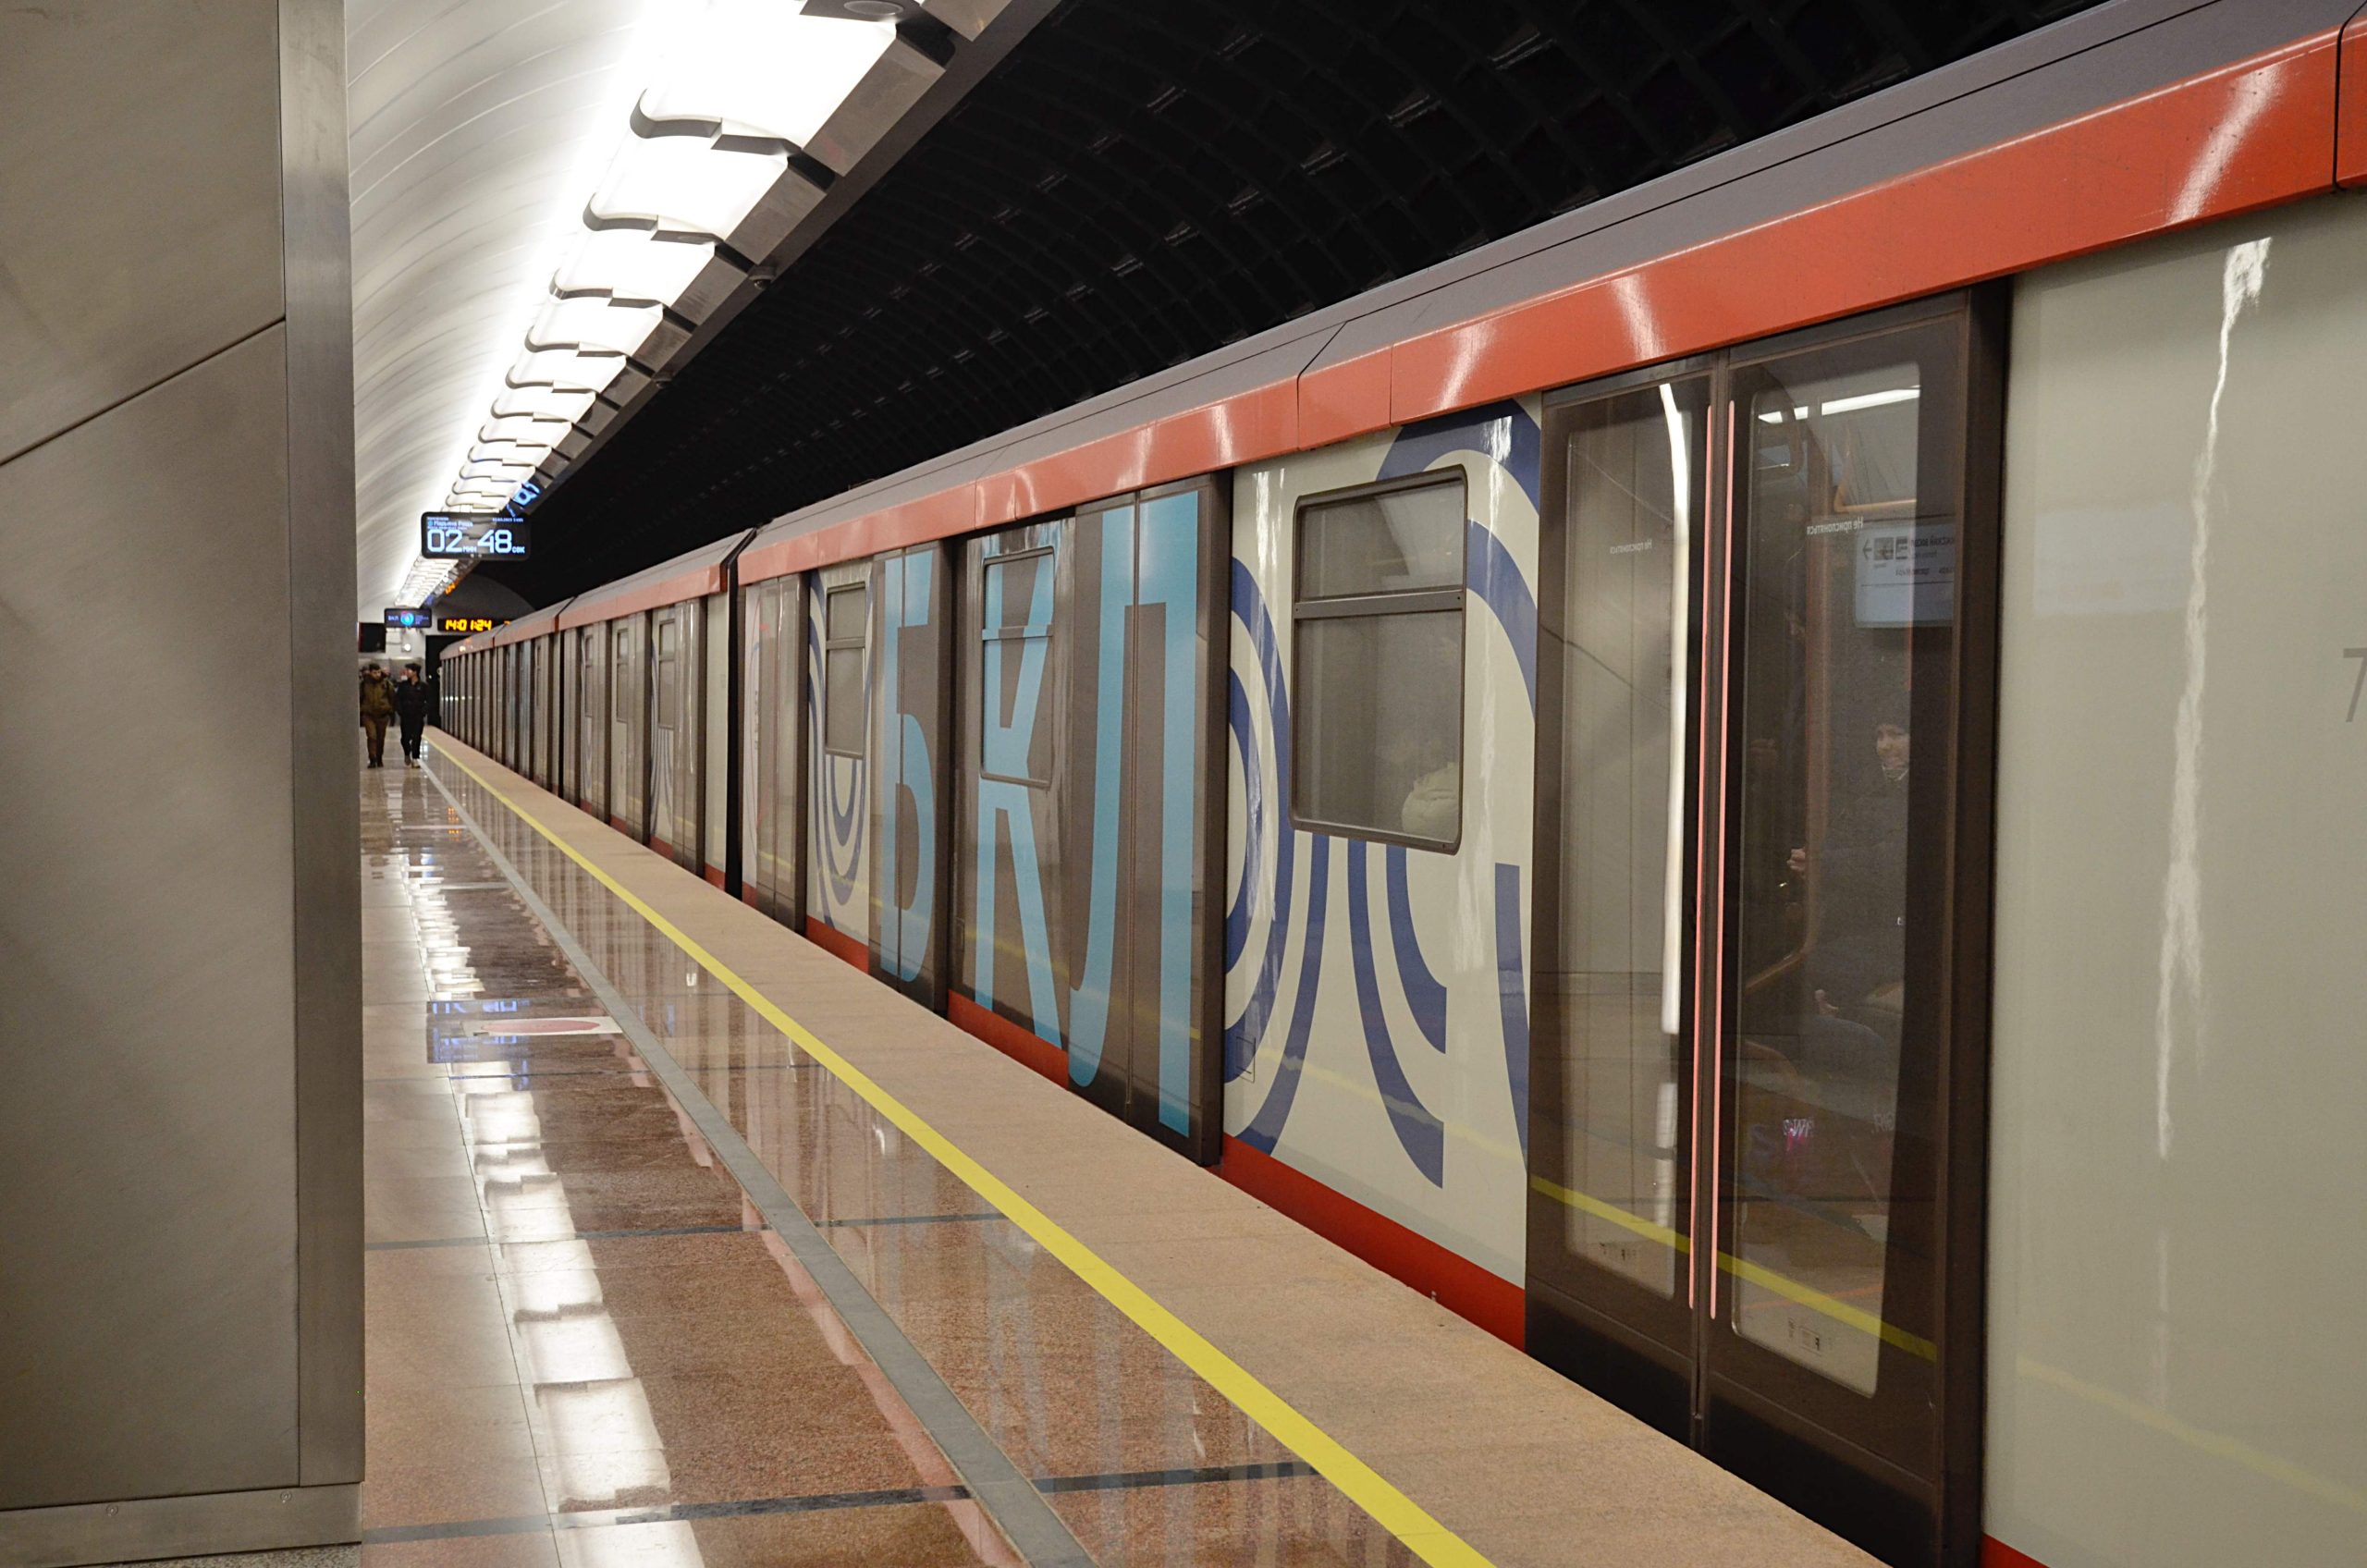 Фотогалерею со снимками открывшихся станций БКЛ опубликовали на сайте мэра Москвы